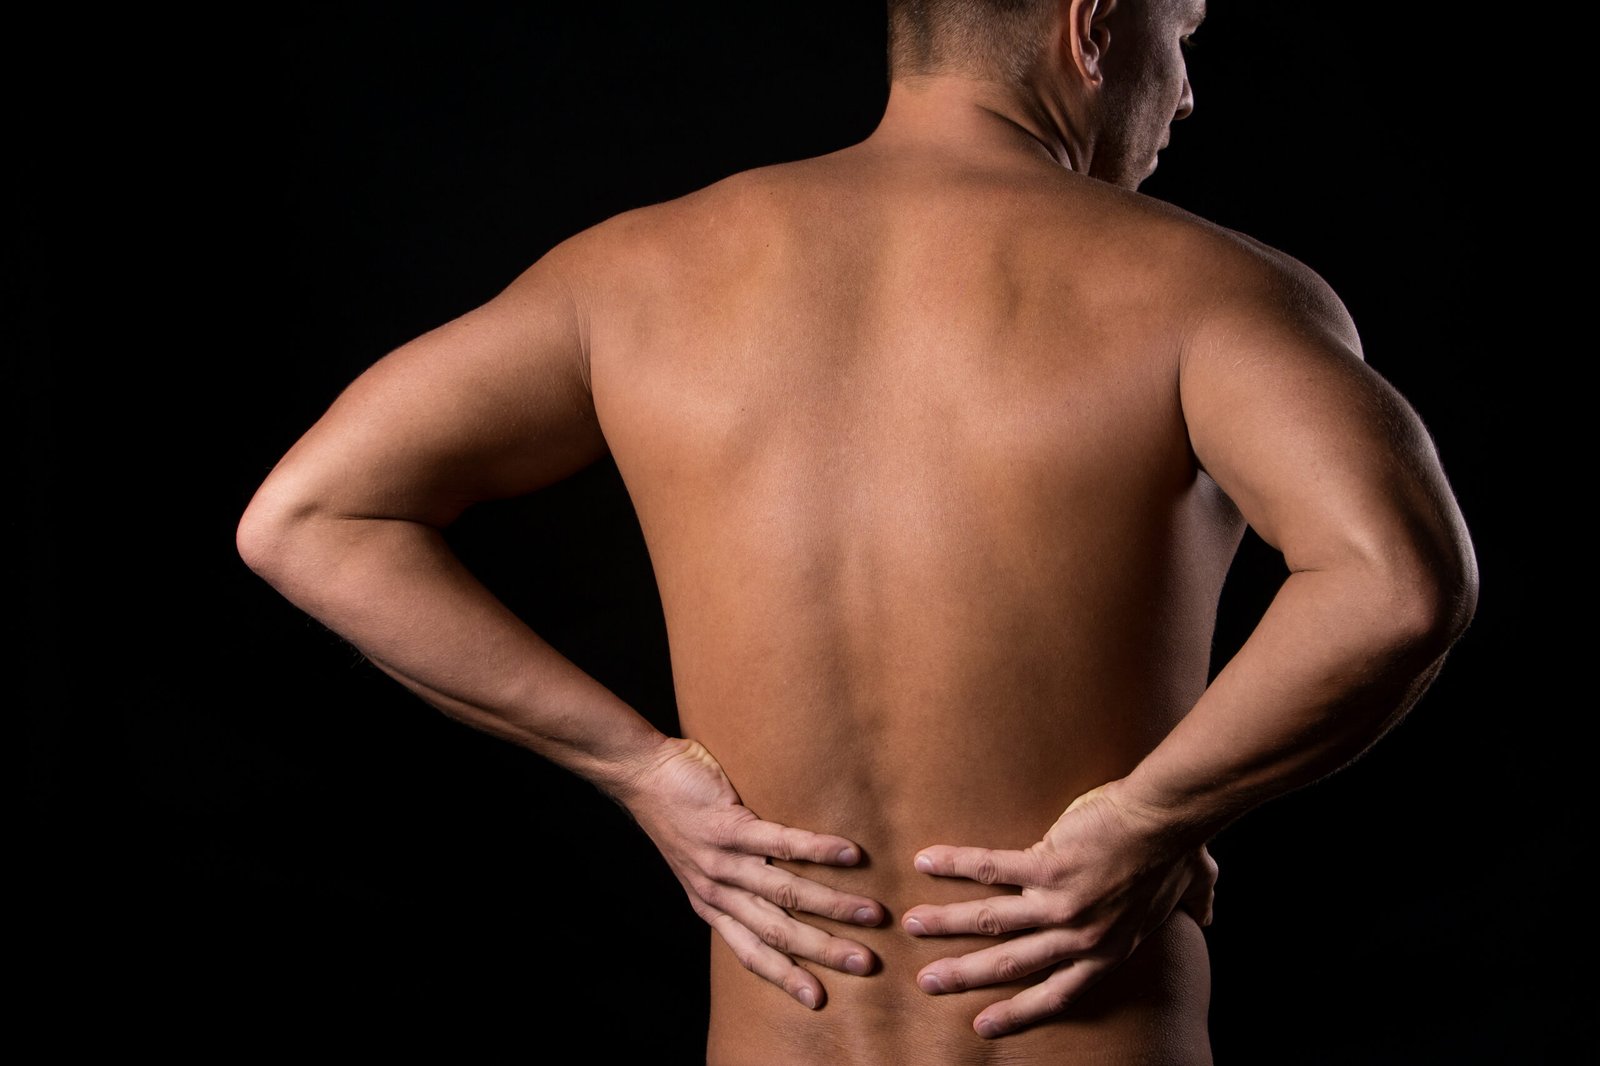 Fotografia de homem com mãos nas costas, indicando a dor da artrose na coluna